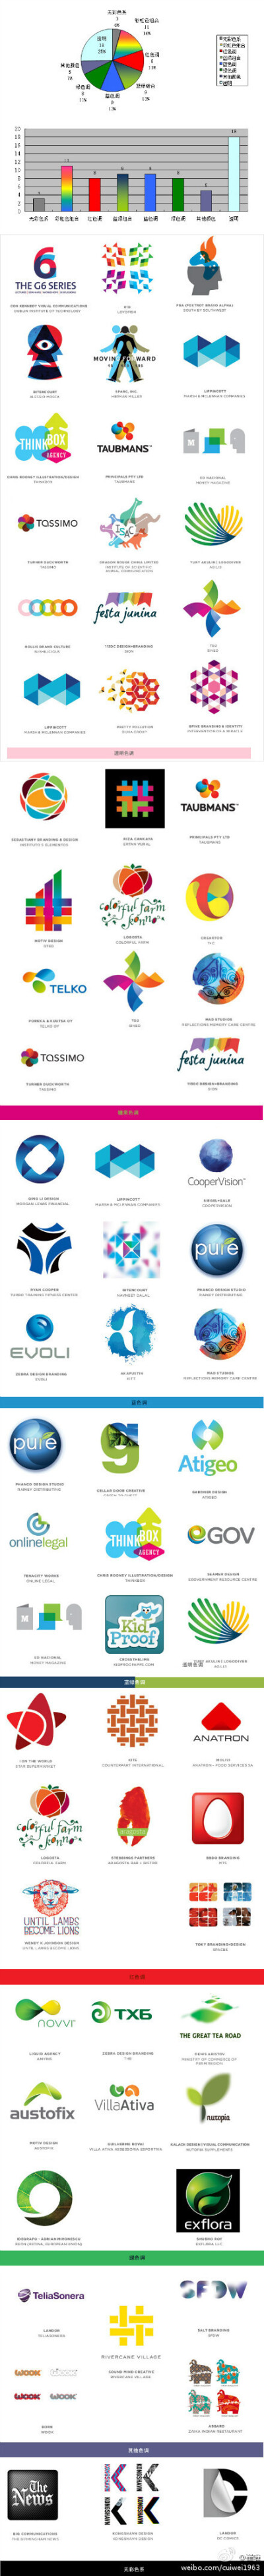 2012年Logo设计趋势报告.jpg ...